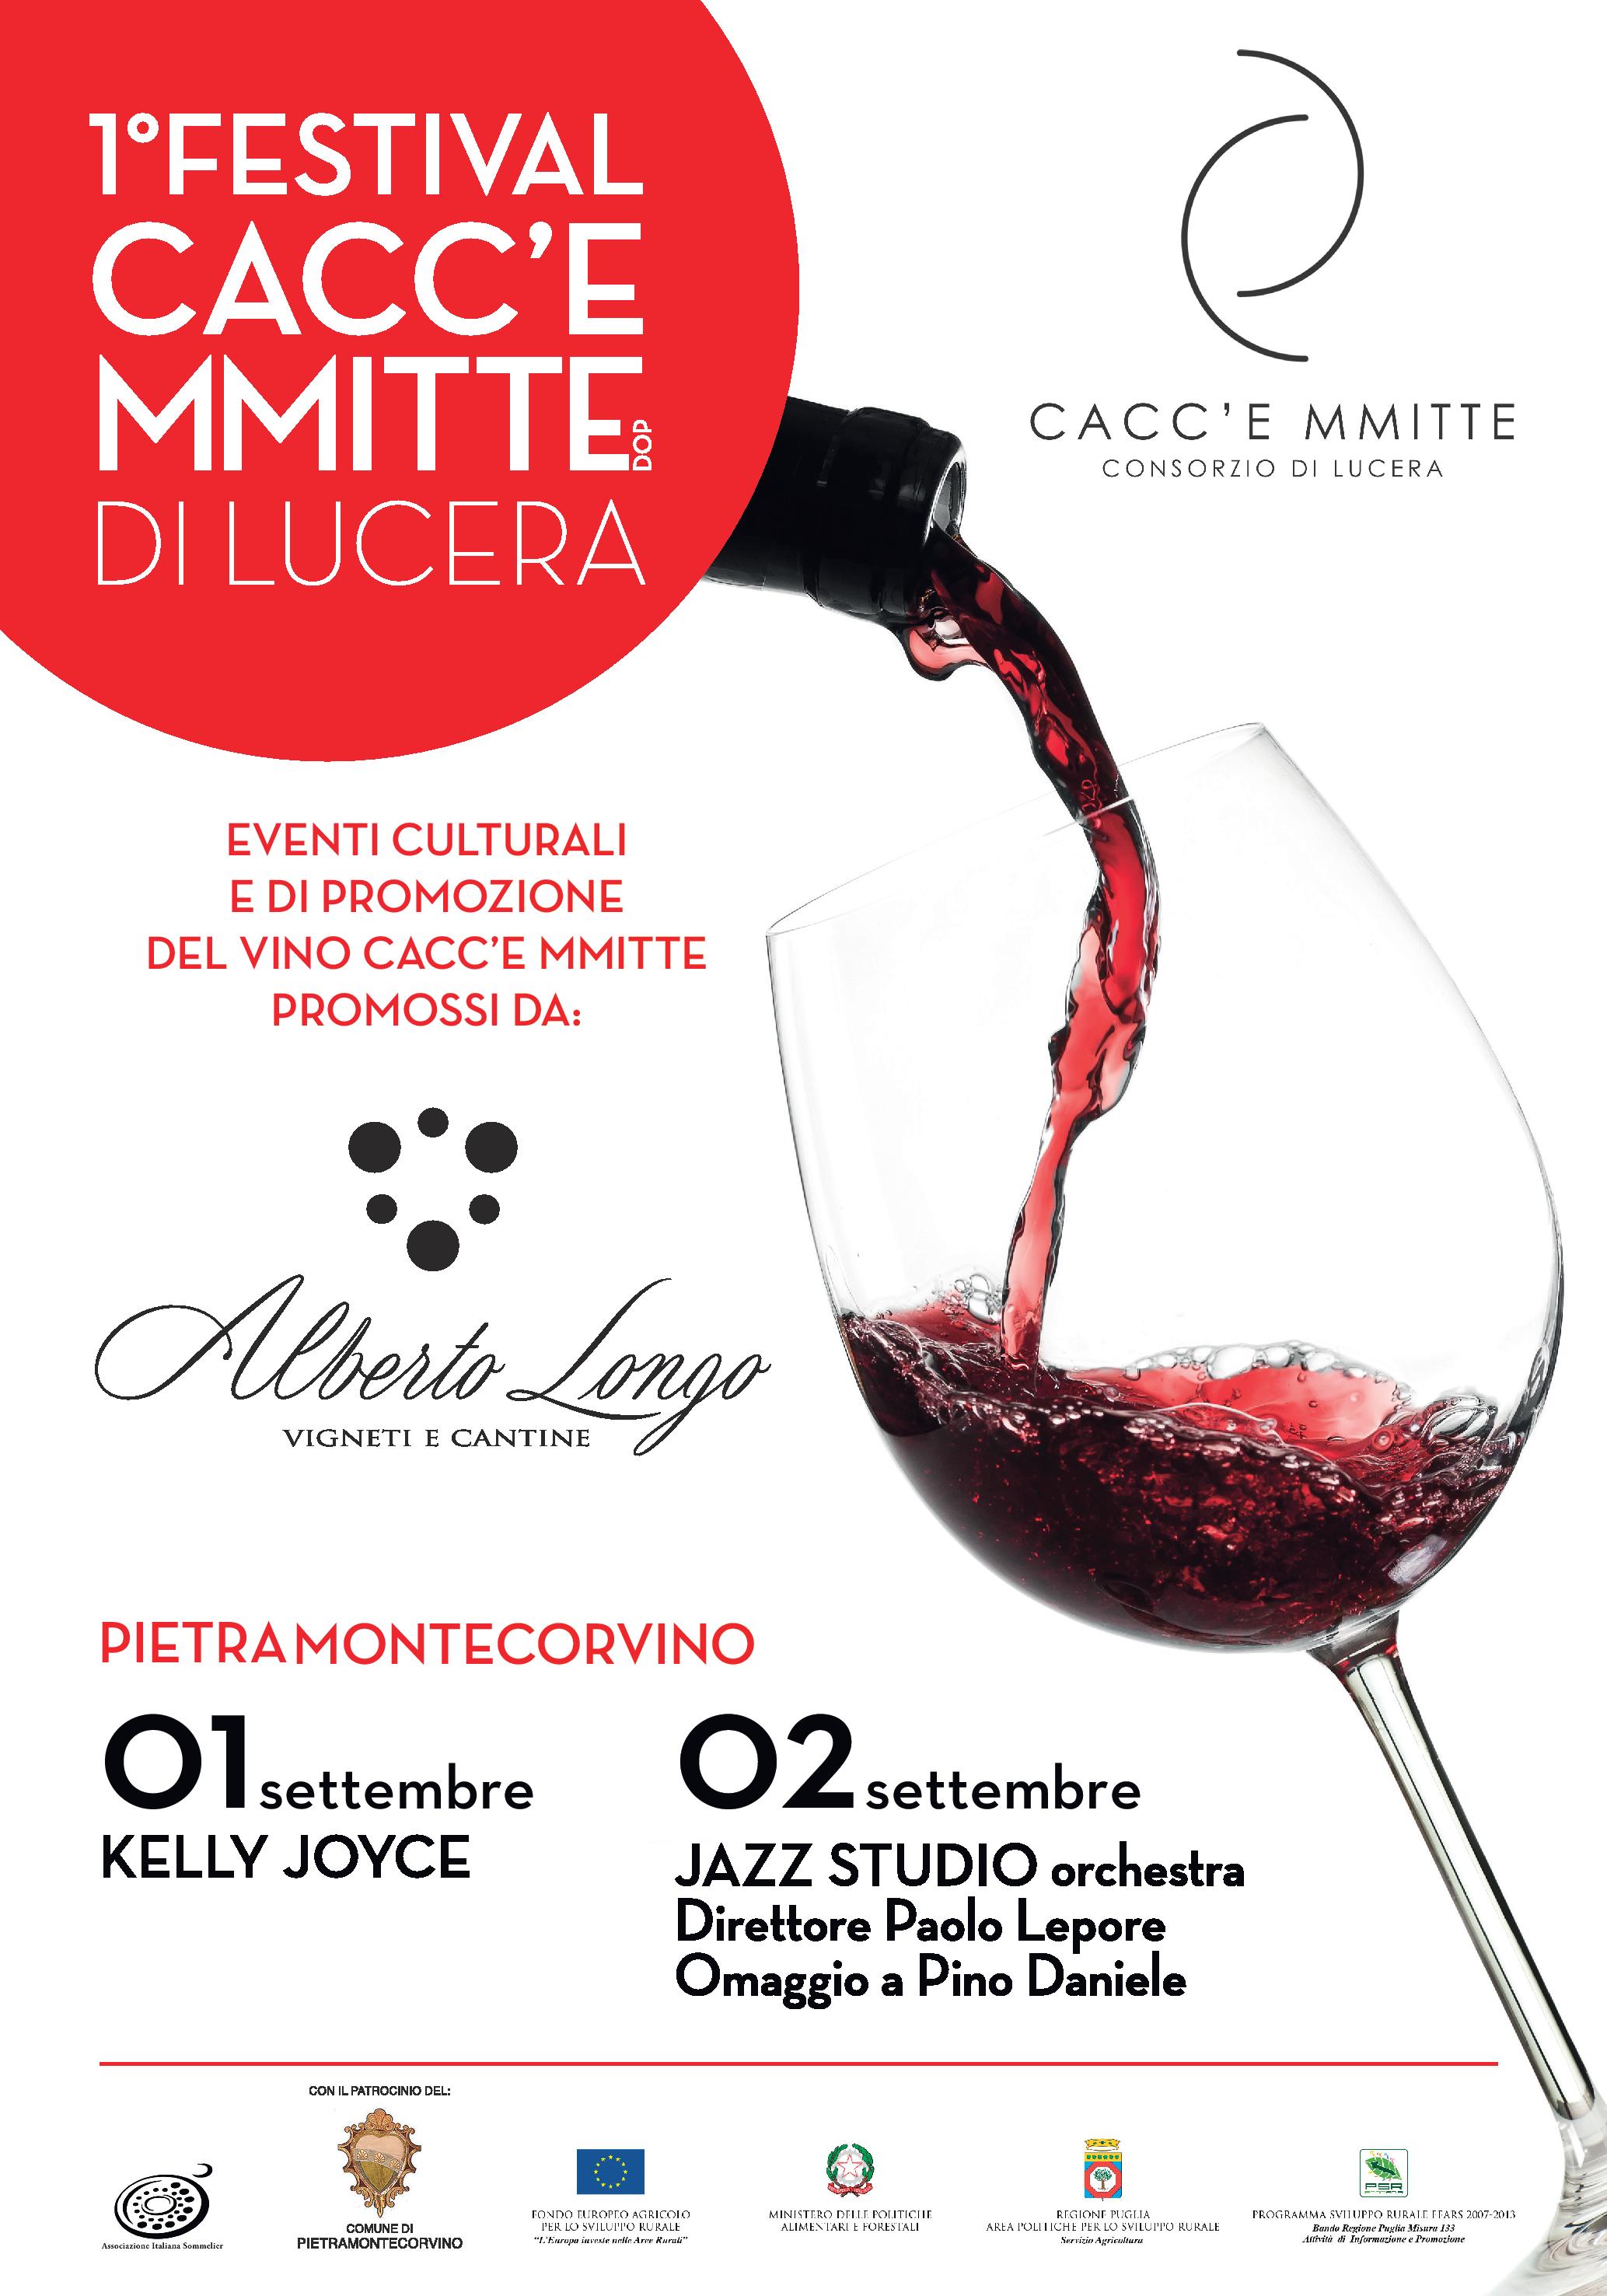 Pietramontecorvino, arriva il “Cacc’e Mmitte Festival”. 1 e 2 settembre grande jazz e buon vino nel castello